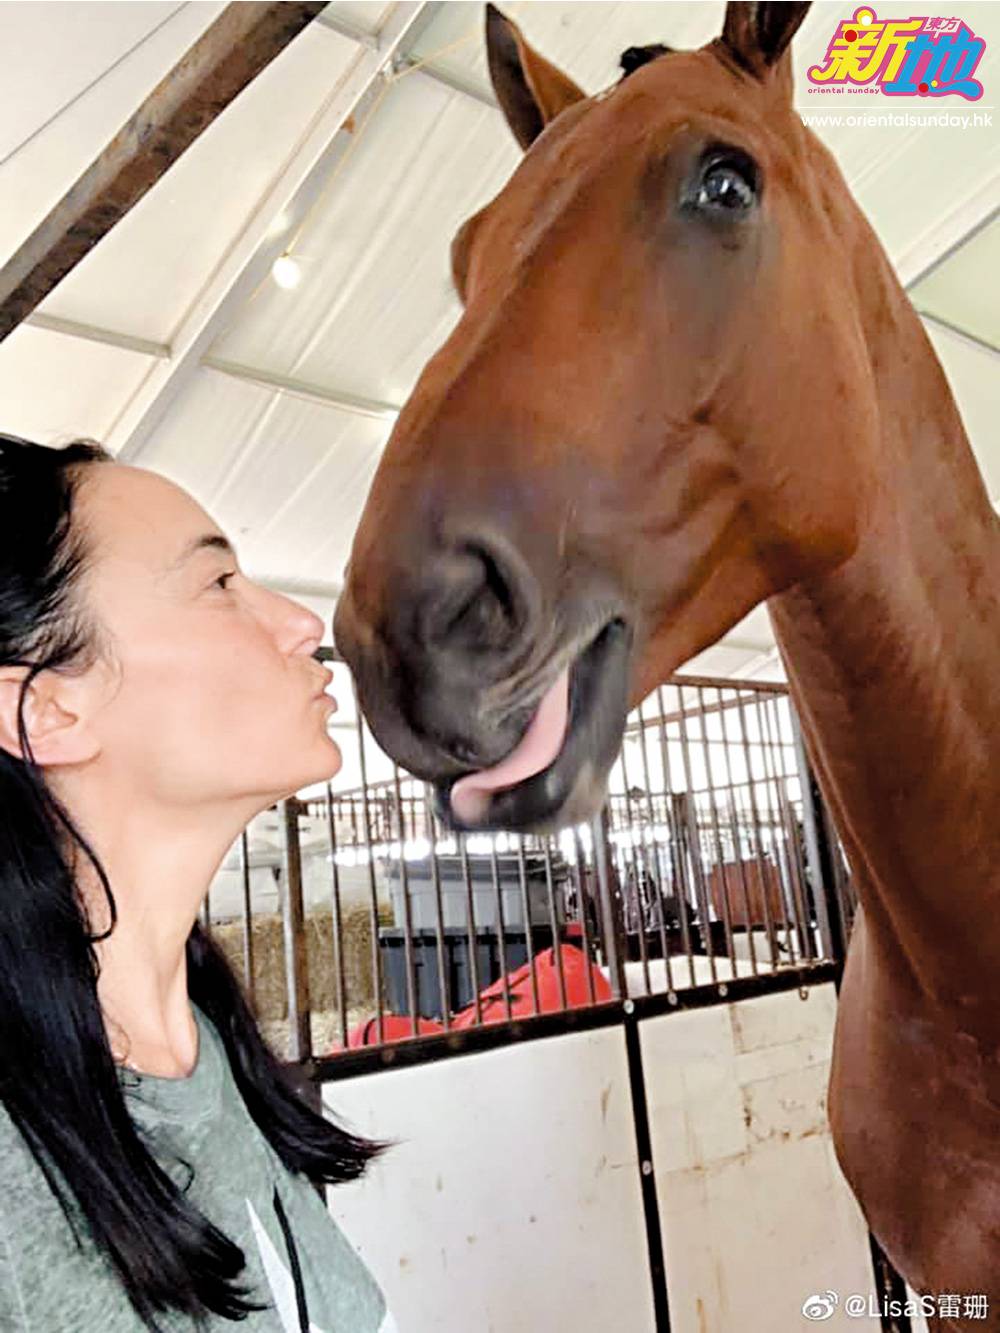  老婆Lisa S.屬愛馬之人，在美國家中養有多匹寵物馬。